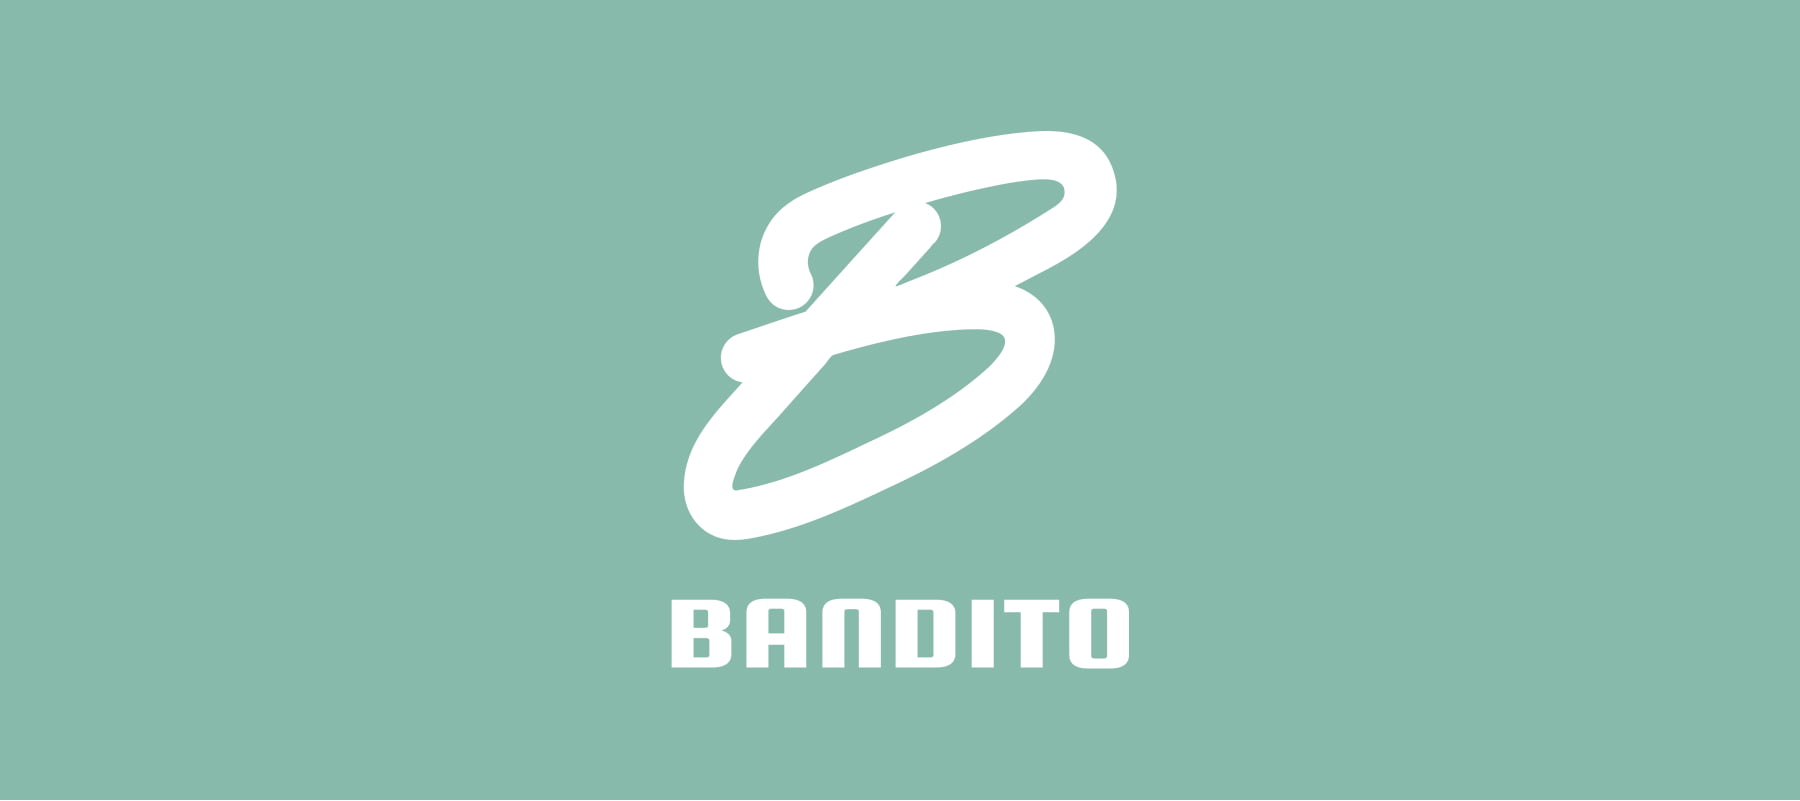 「バンディート生駒」のウェブサイトがオープンしました。